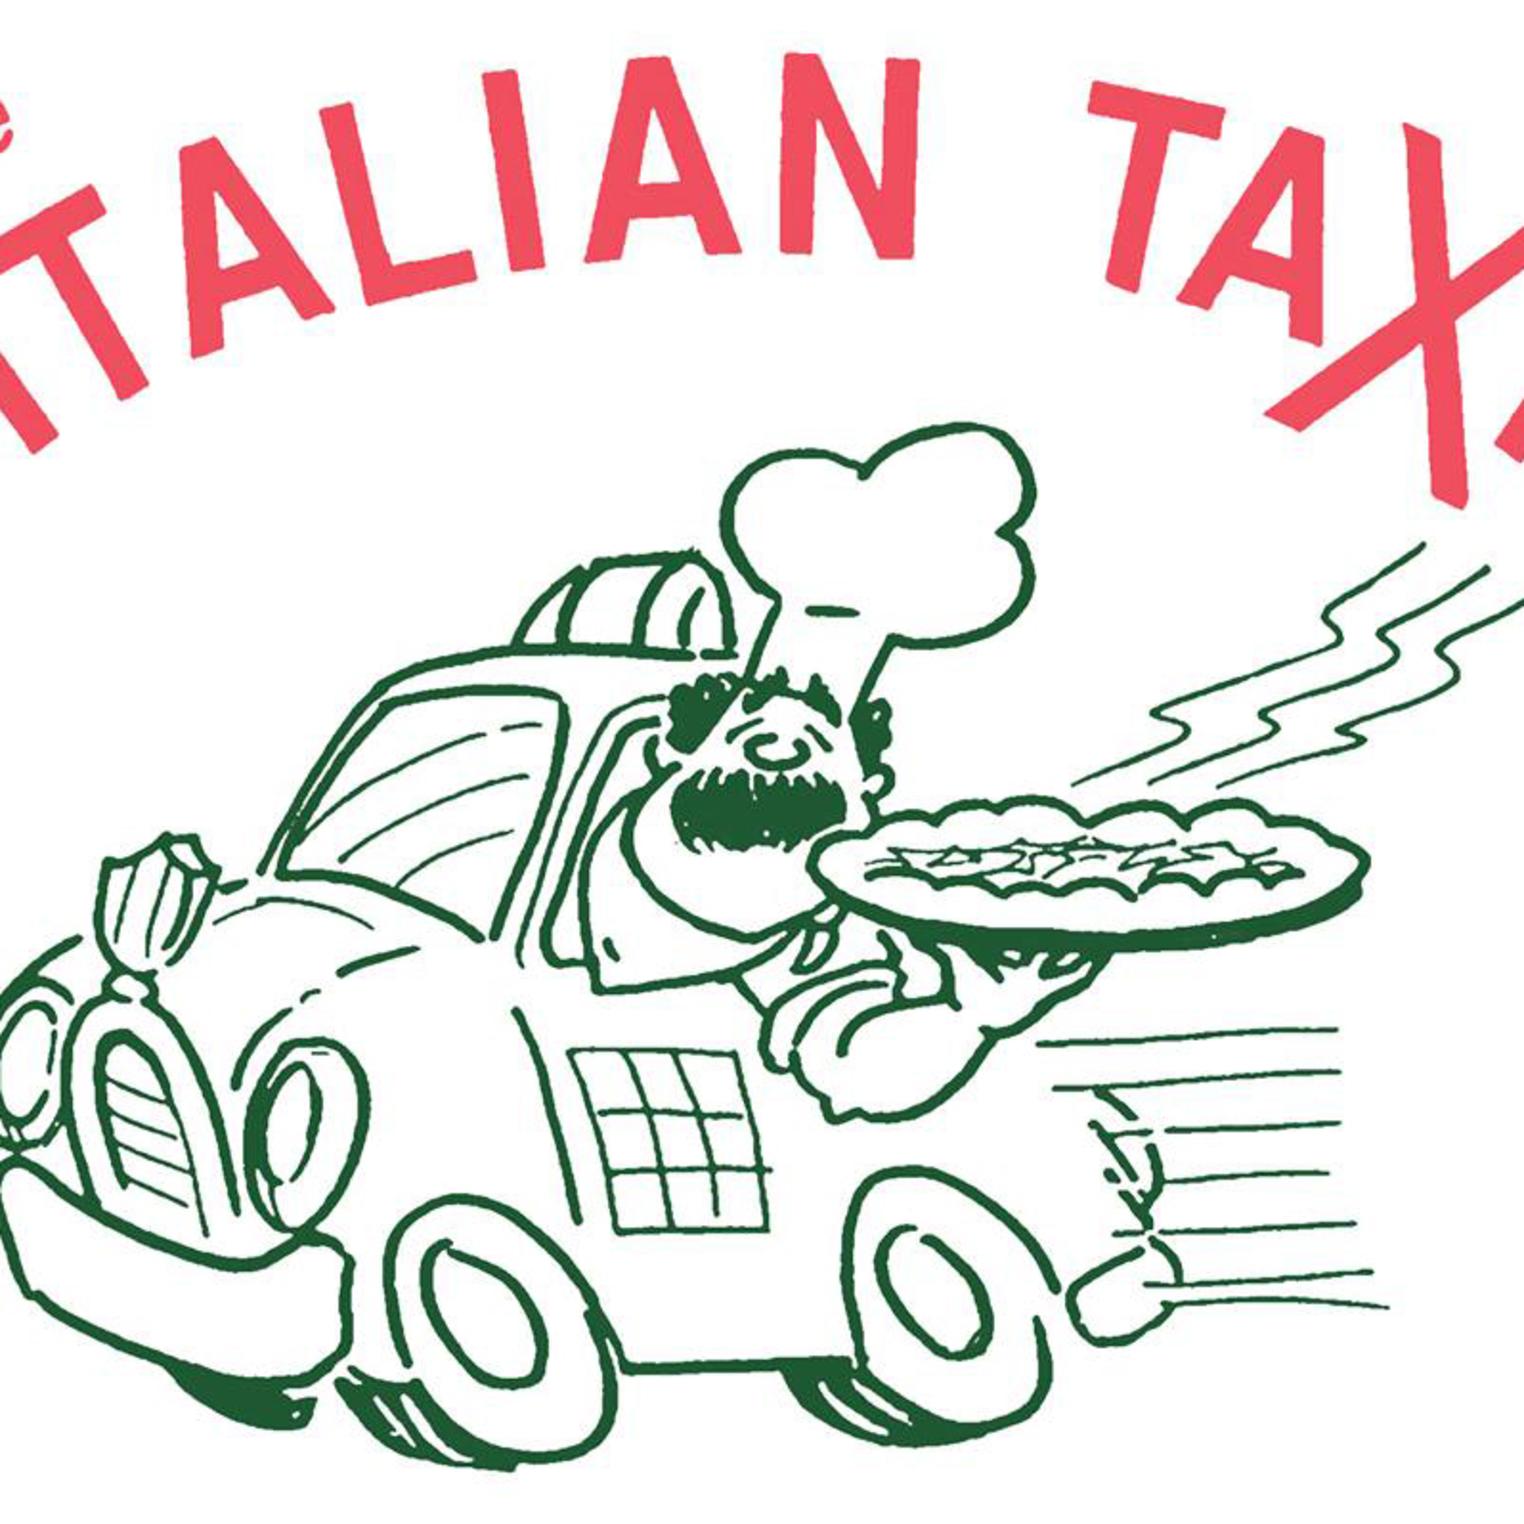 The Italian Taxi